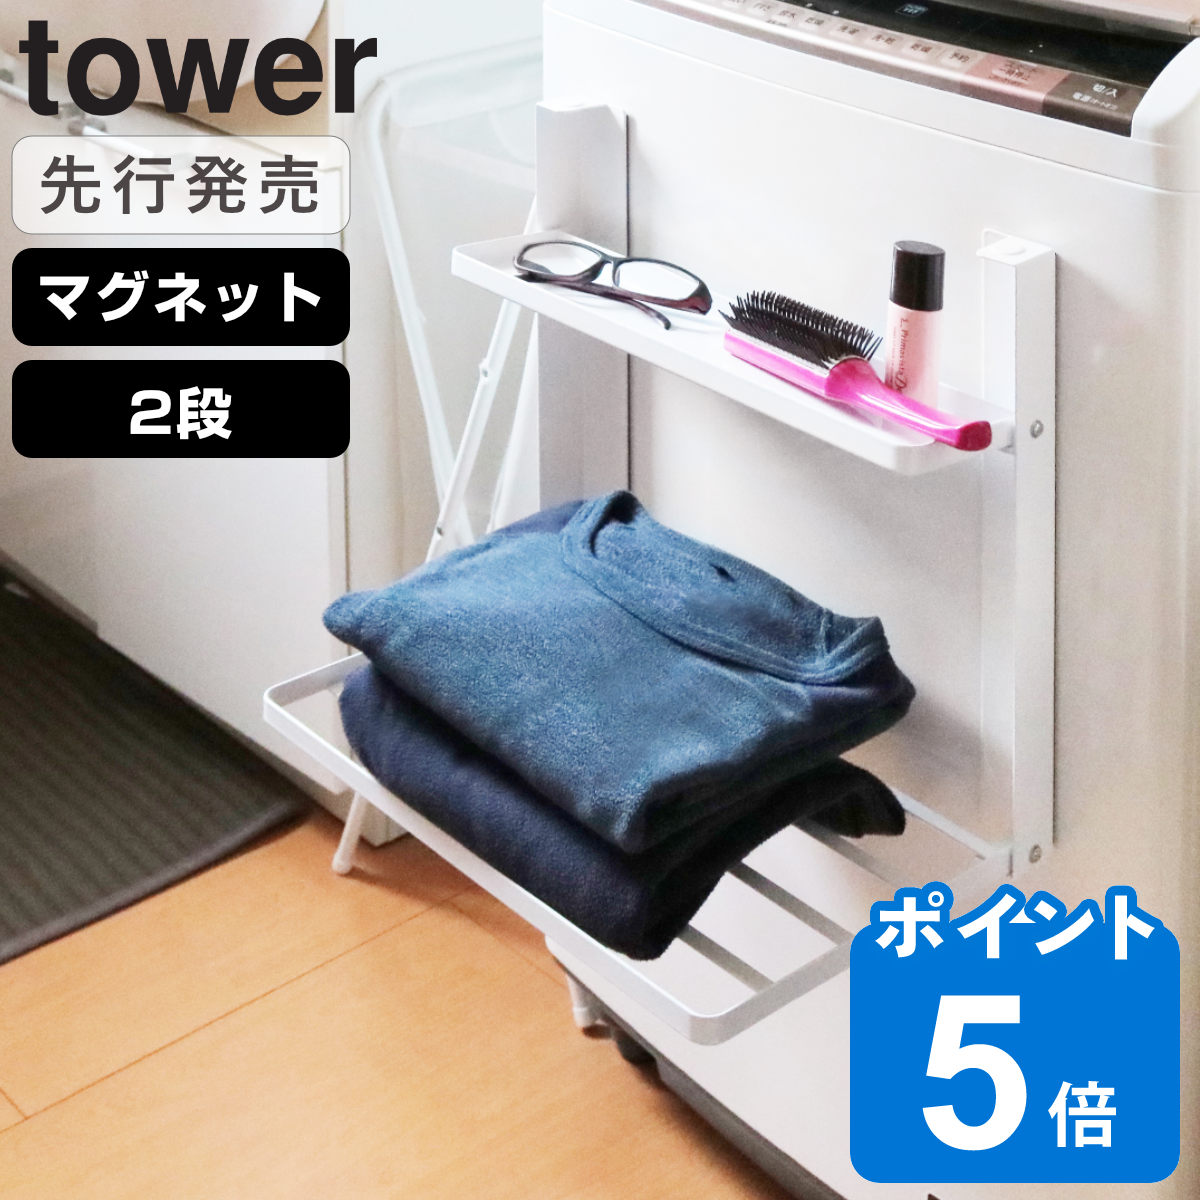 山崎実業 tower 洗濯機横マグネット折り畳み棚 2段 タワー ホワイト